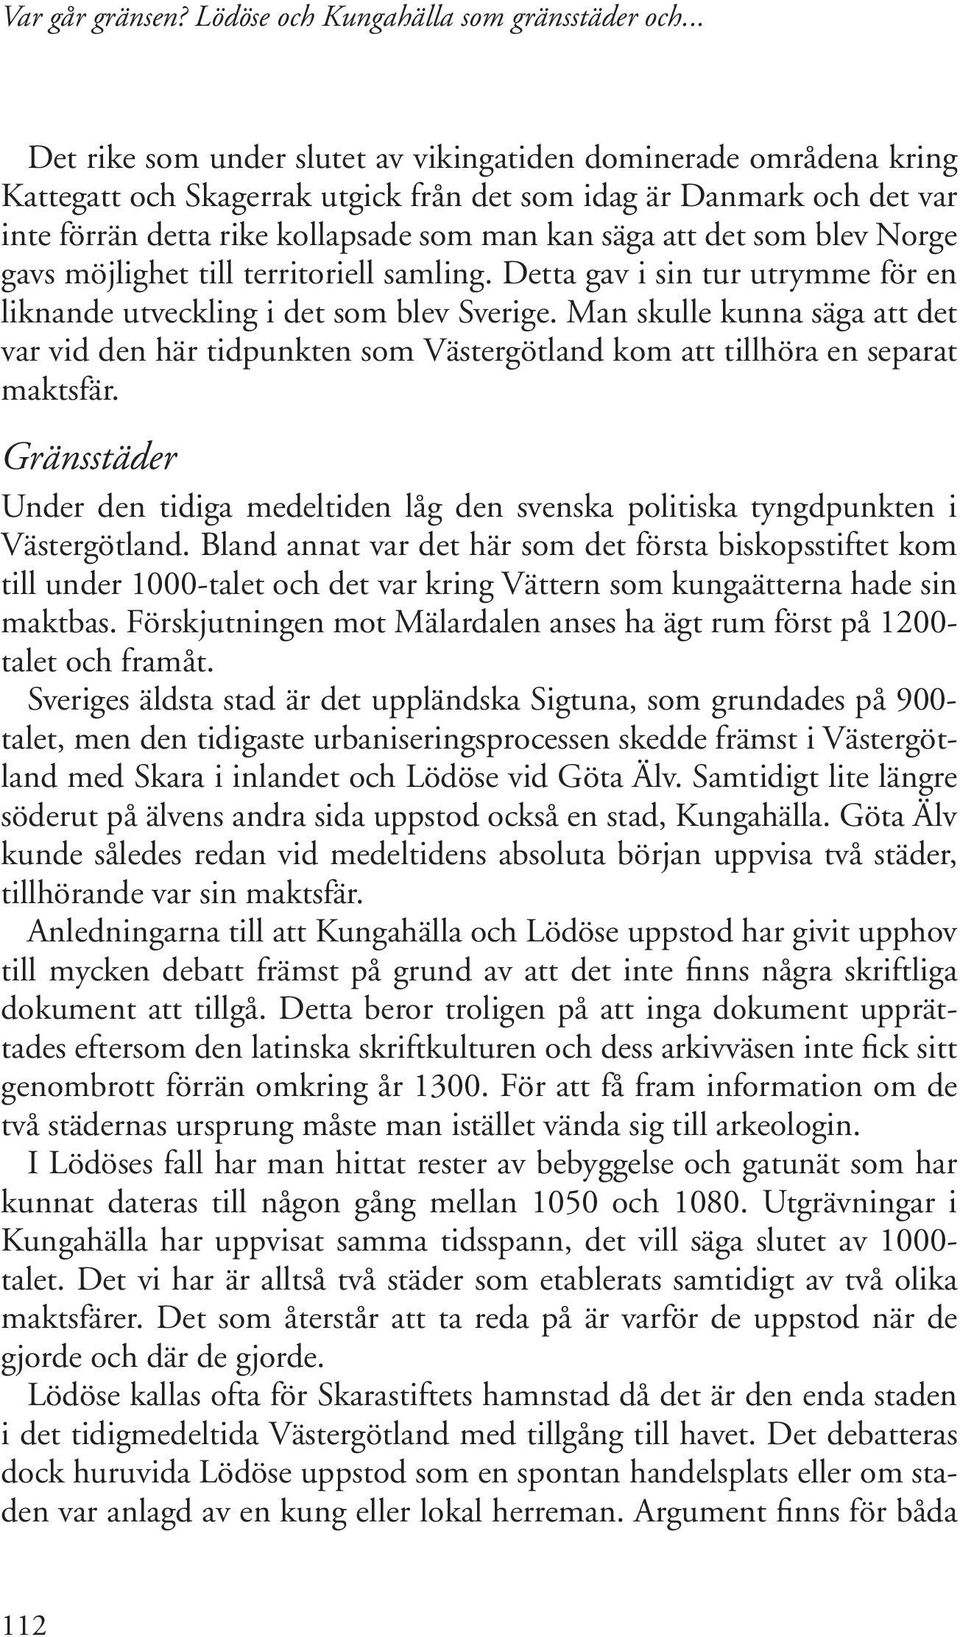 Man skulle kunna säga att det var vid den här tidpunkten som Västergötland kom att tillhöra en separat maktsfär.